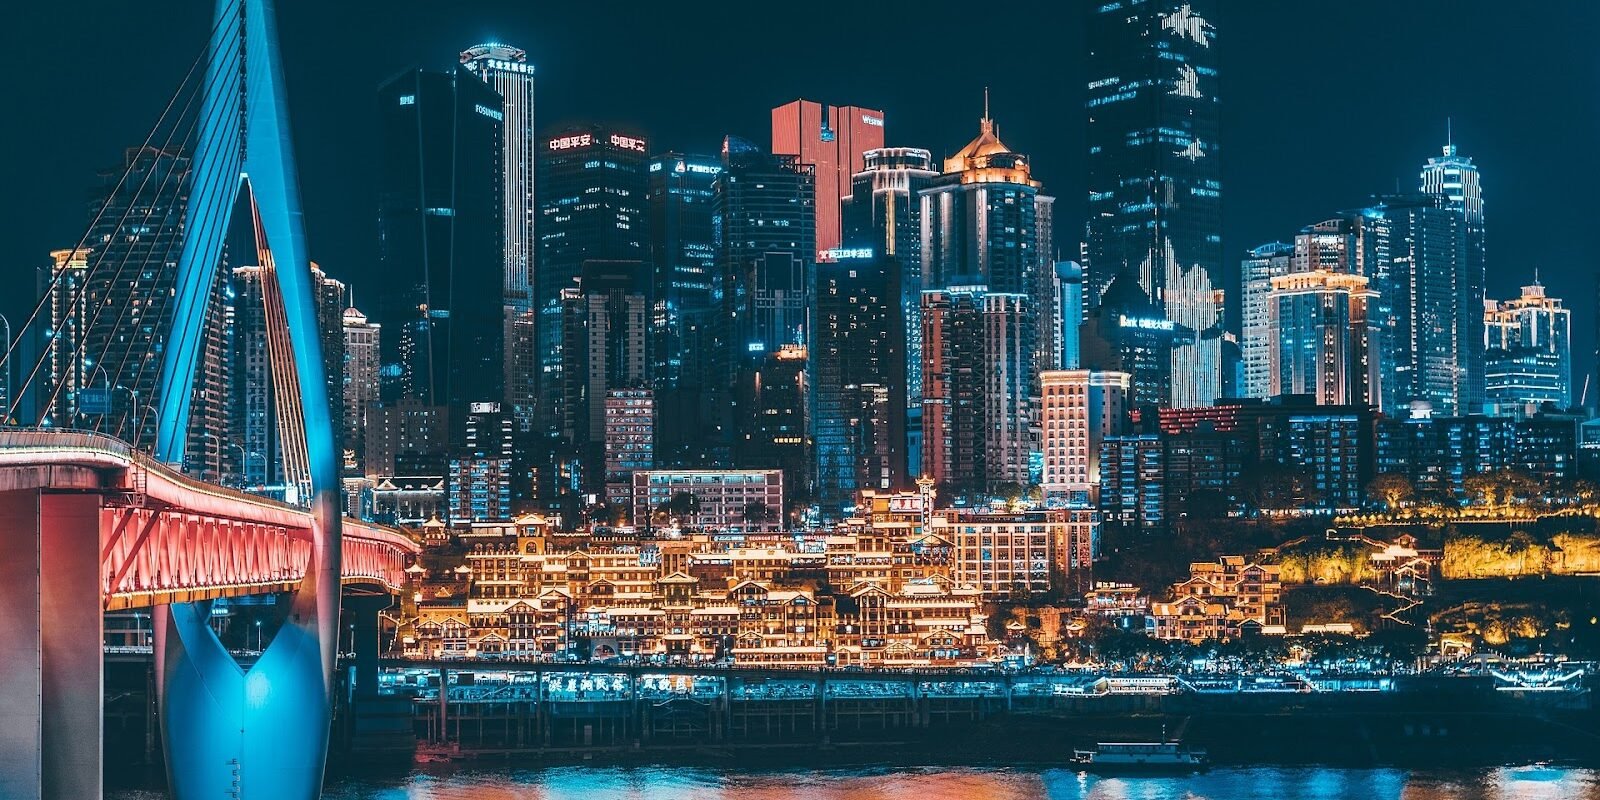  Chongqing City in China